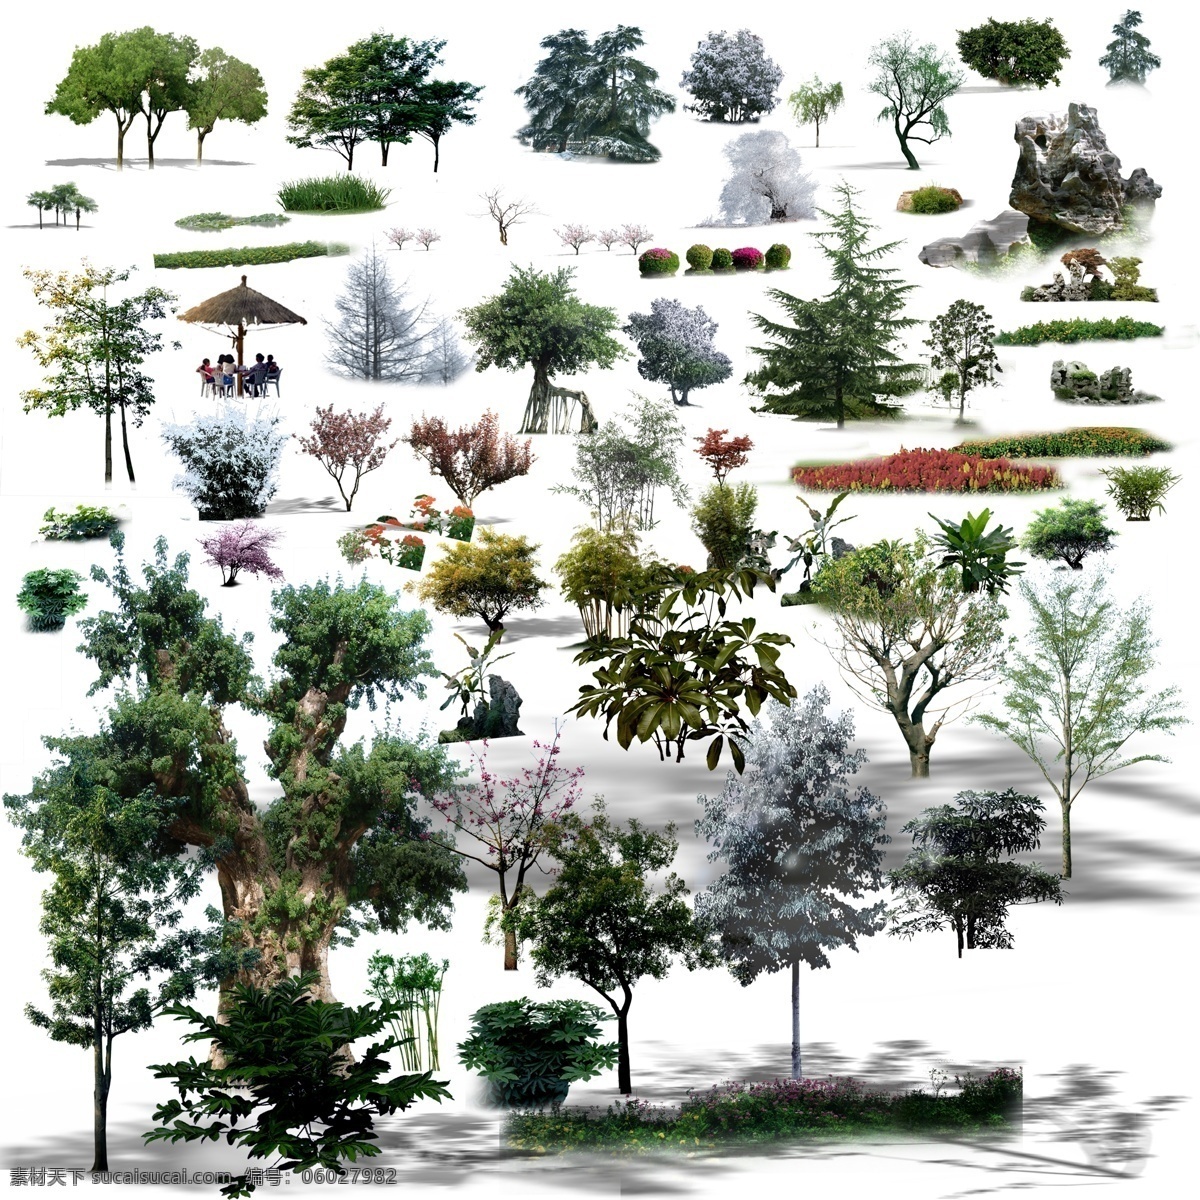 常用 植物 鸟瞰 景观后期 常用植物 鸟瞰植物素材 树种绿化 后期素材 配景 绿化景观 环境设计 园林设计 景观设计